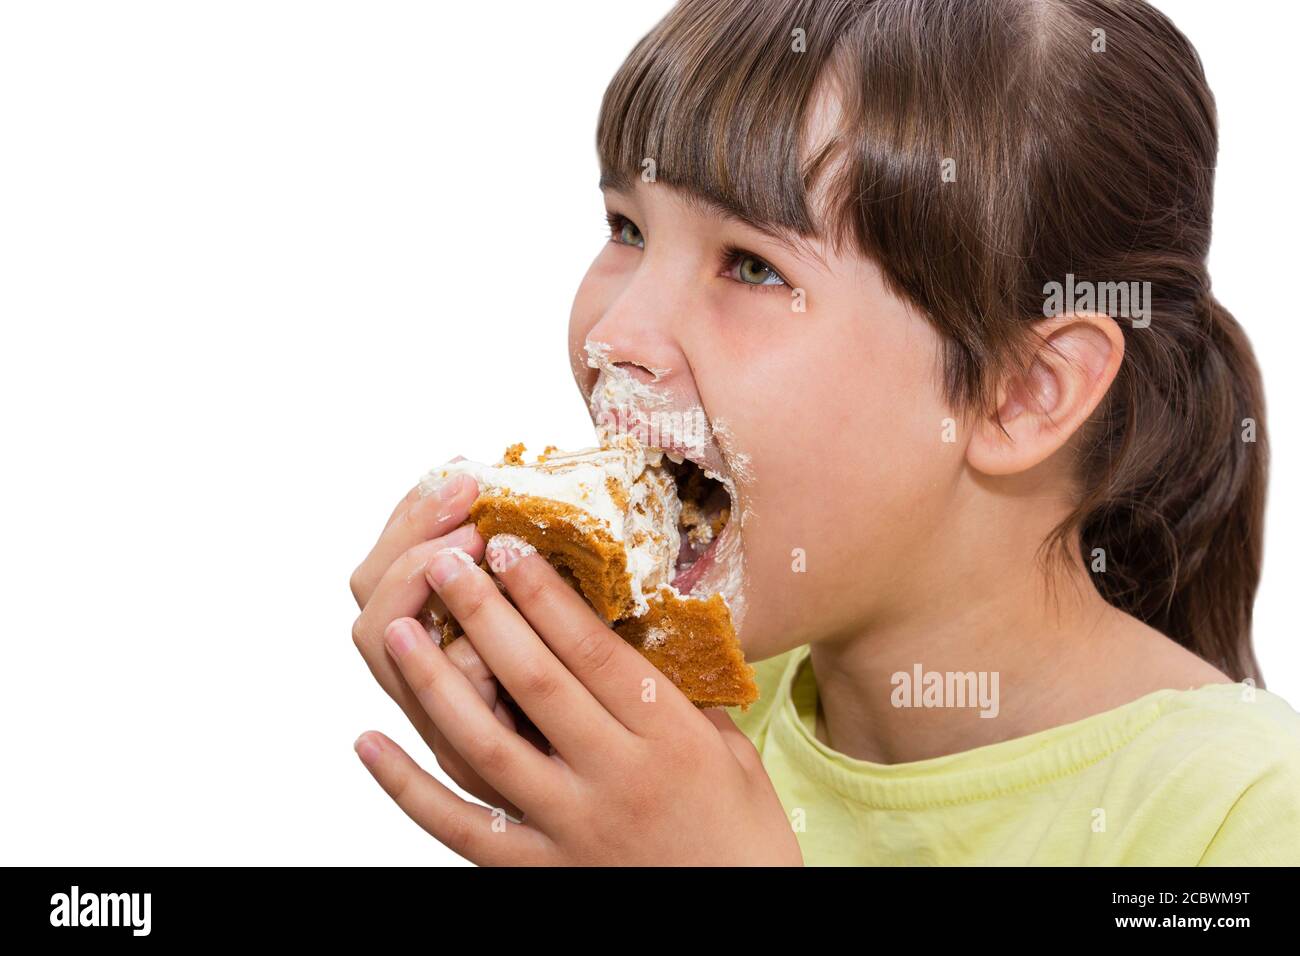 Girl eating cake. Isolated on white background. Stock Photo